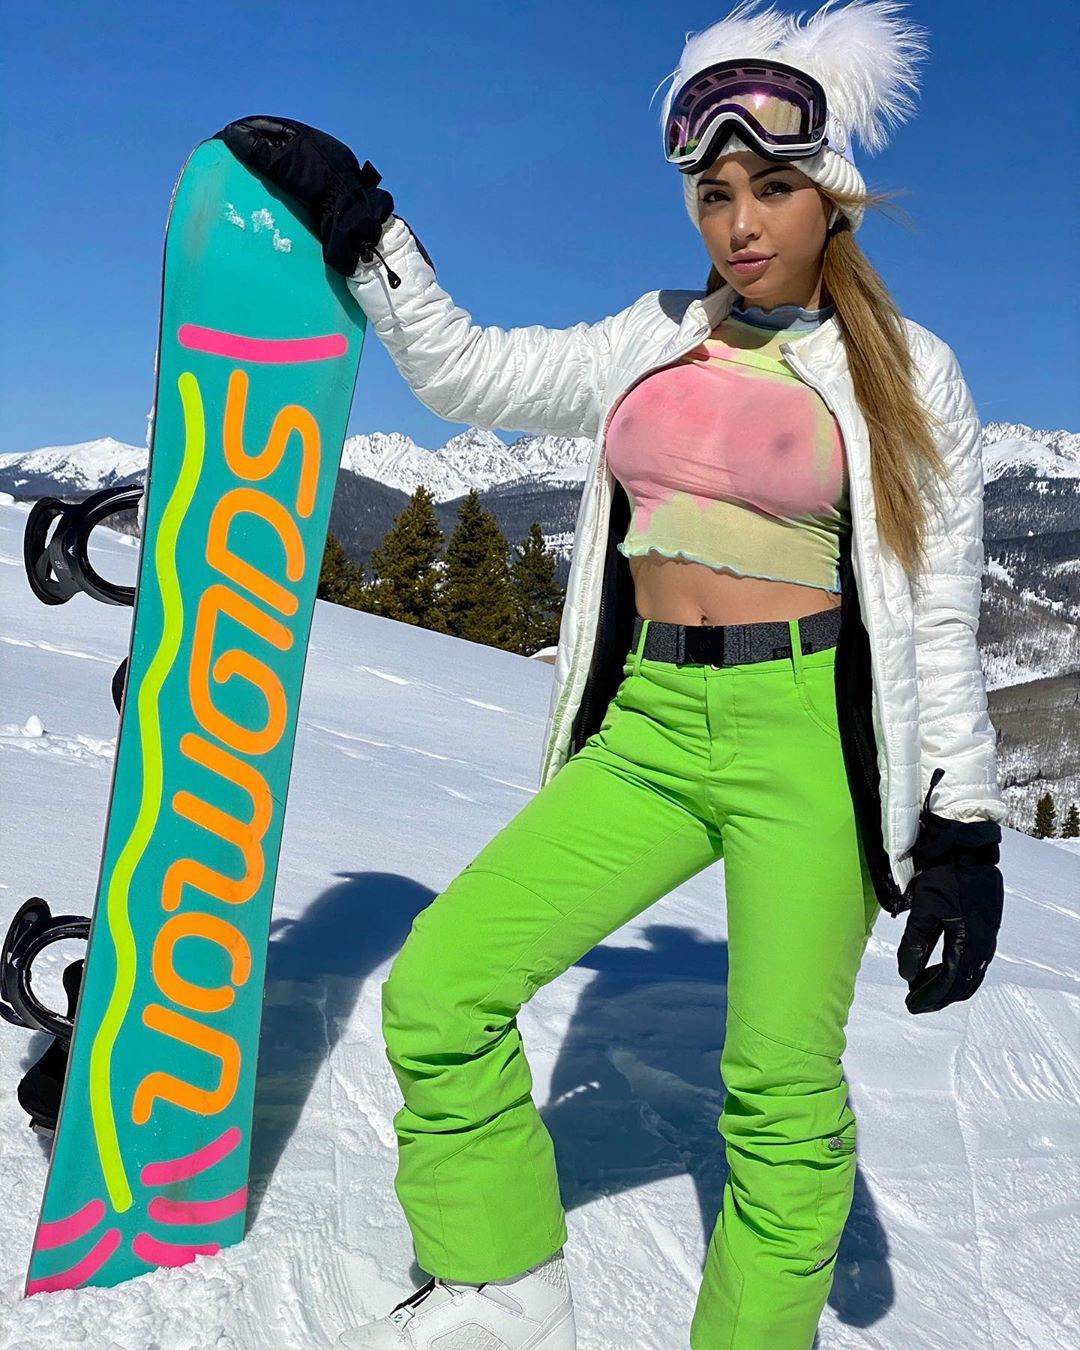 Maddy Belle enjoying life, ski equipment, winter sport: Instagram girls  